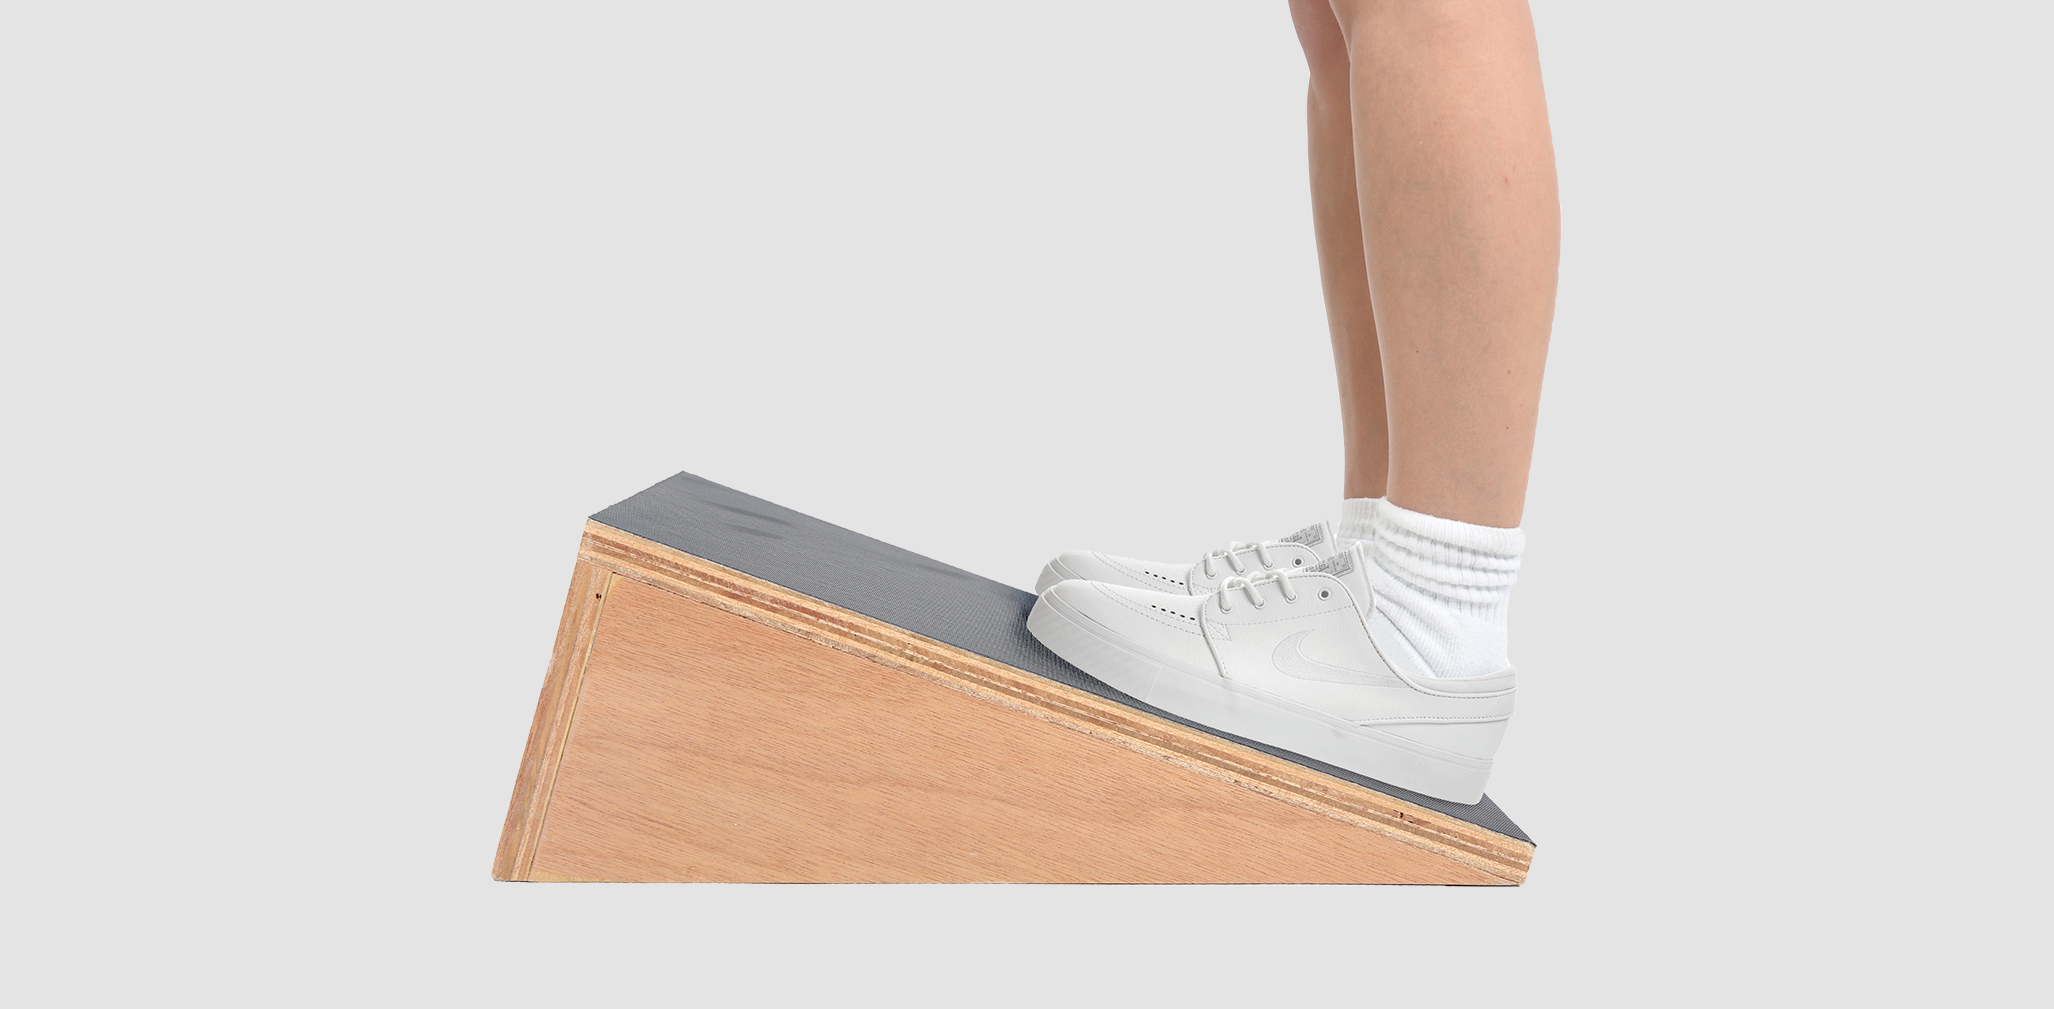 Wooden incline board - fix